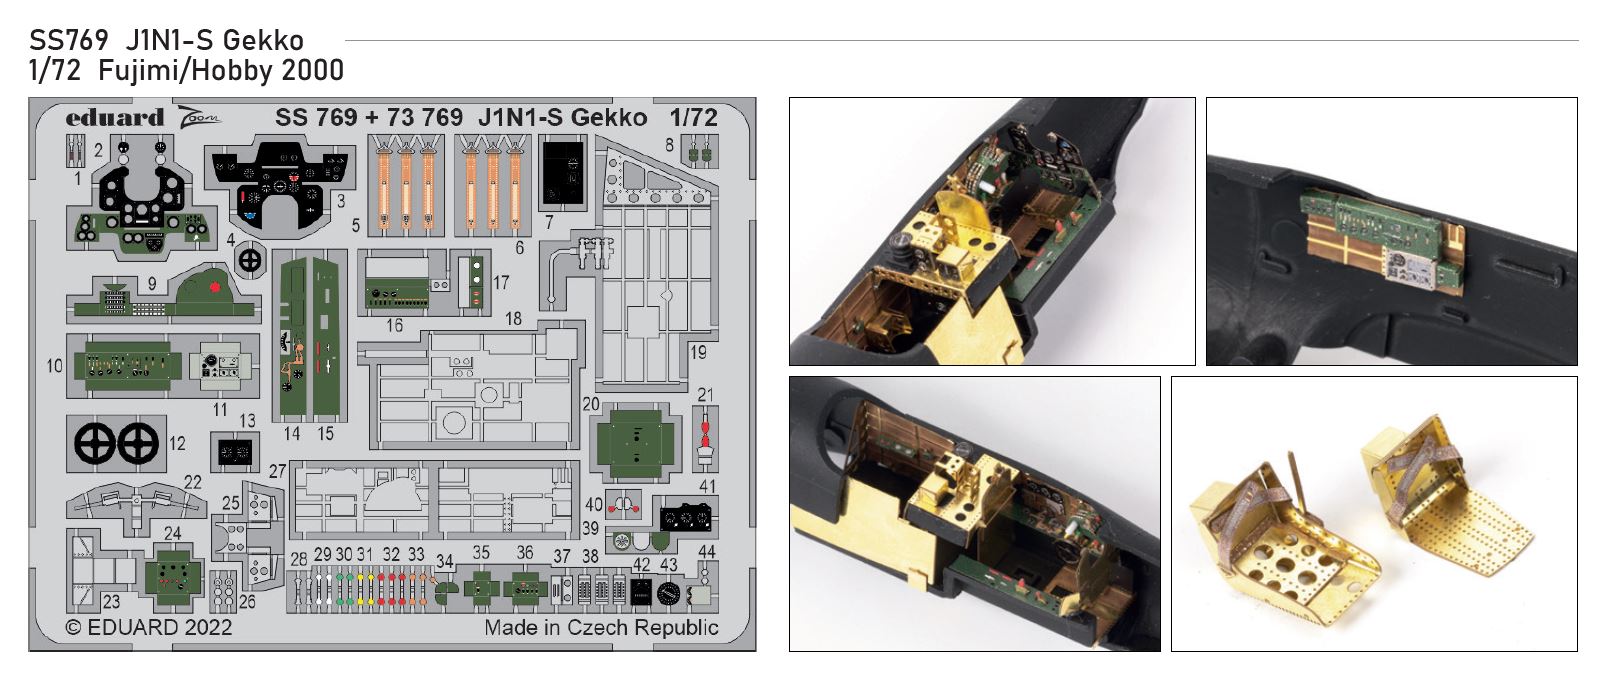 1/72 J1N1-S Gekko (FUJIMI / HOBBY 2000)